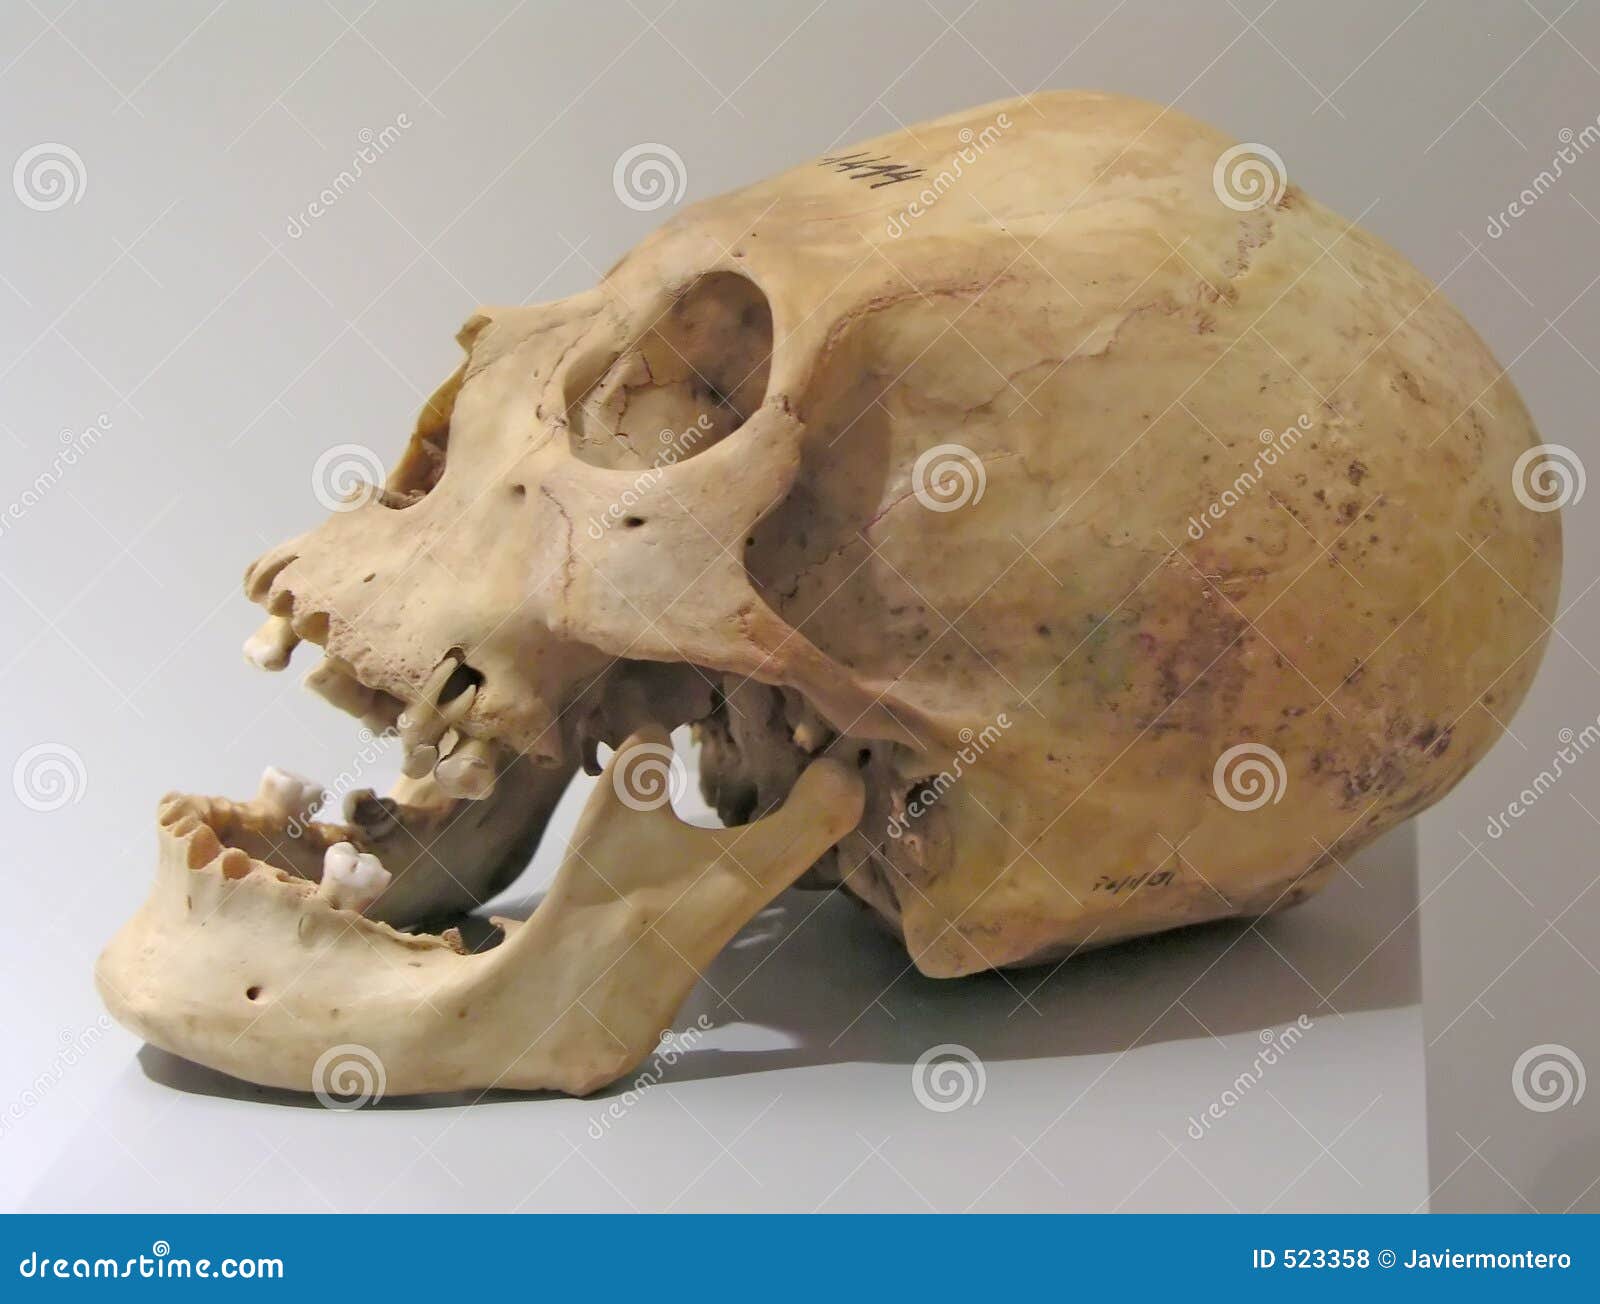 prehistoric-skull-523358.jpg